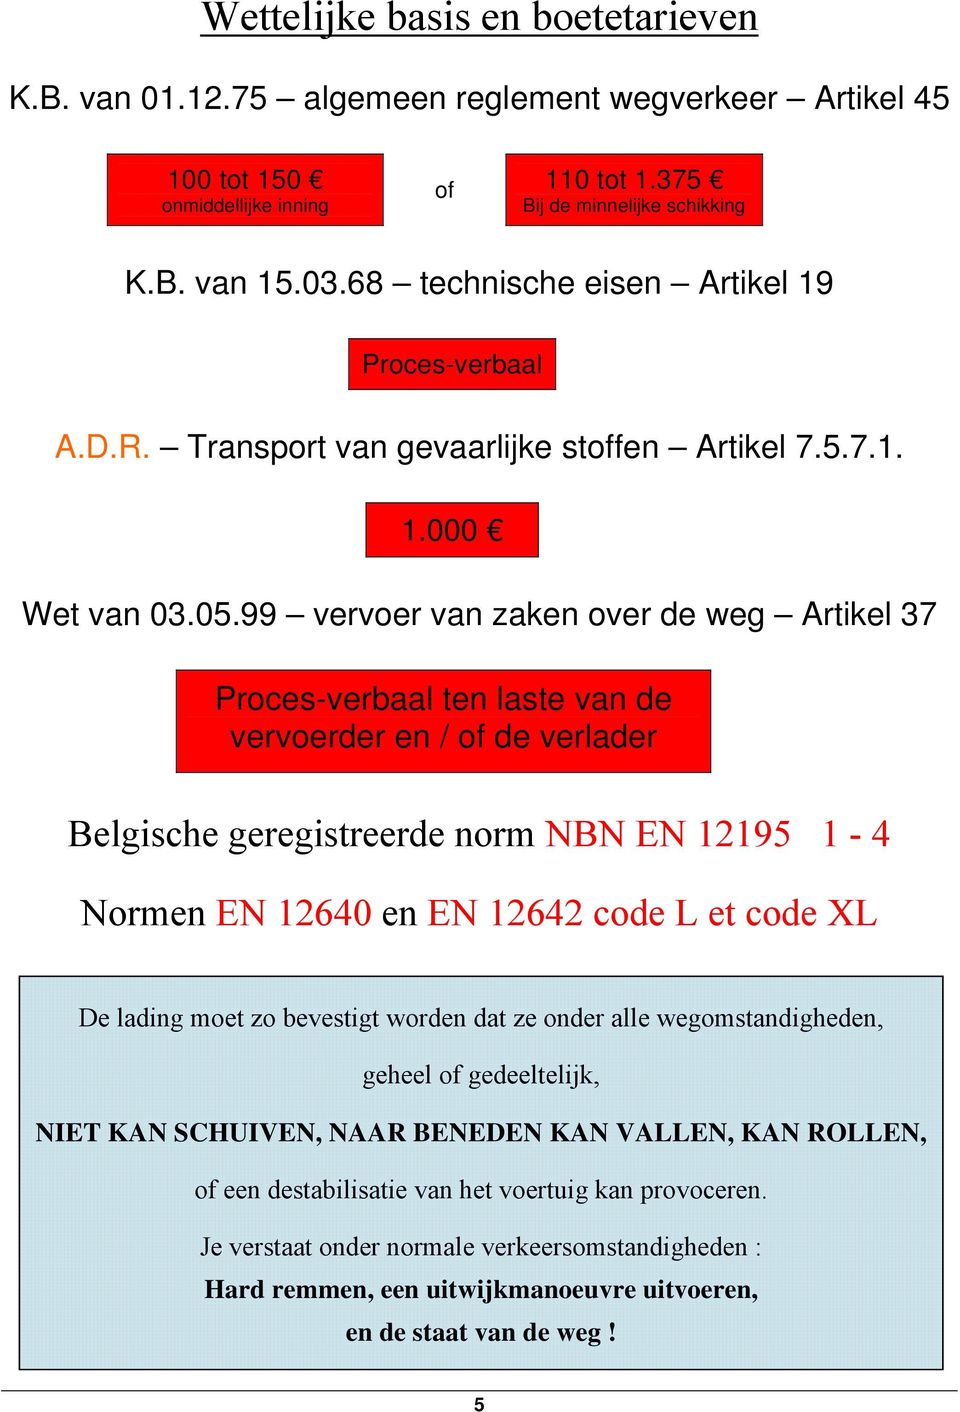 99 vervoer van zaken over de weg Artikel 37 Proces-verbaal ten laste van de vervoerder en / of de verlader Belgische geregistreerde norm NBN EN 12195 1-4 Normen EN 12640 en EN 12642 code L et code XL